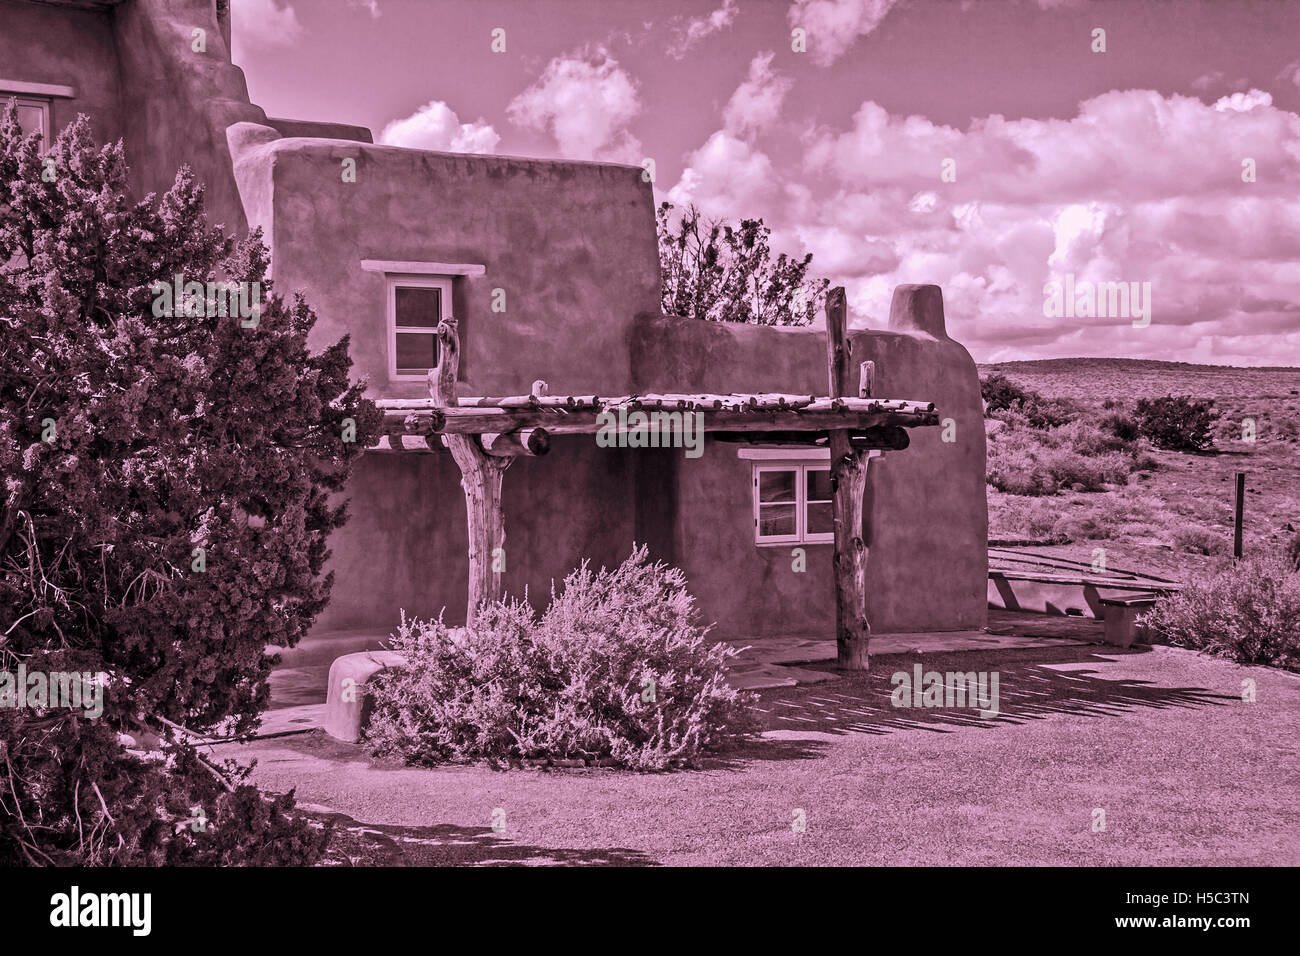 Speicher Für Das Haus. Fotografie des Adobe House Building in New Mexico, USA. Stockfoto